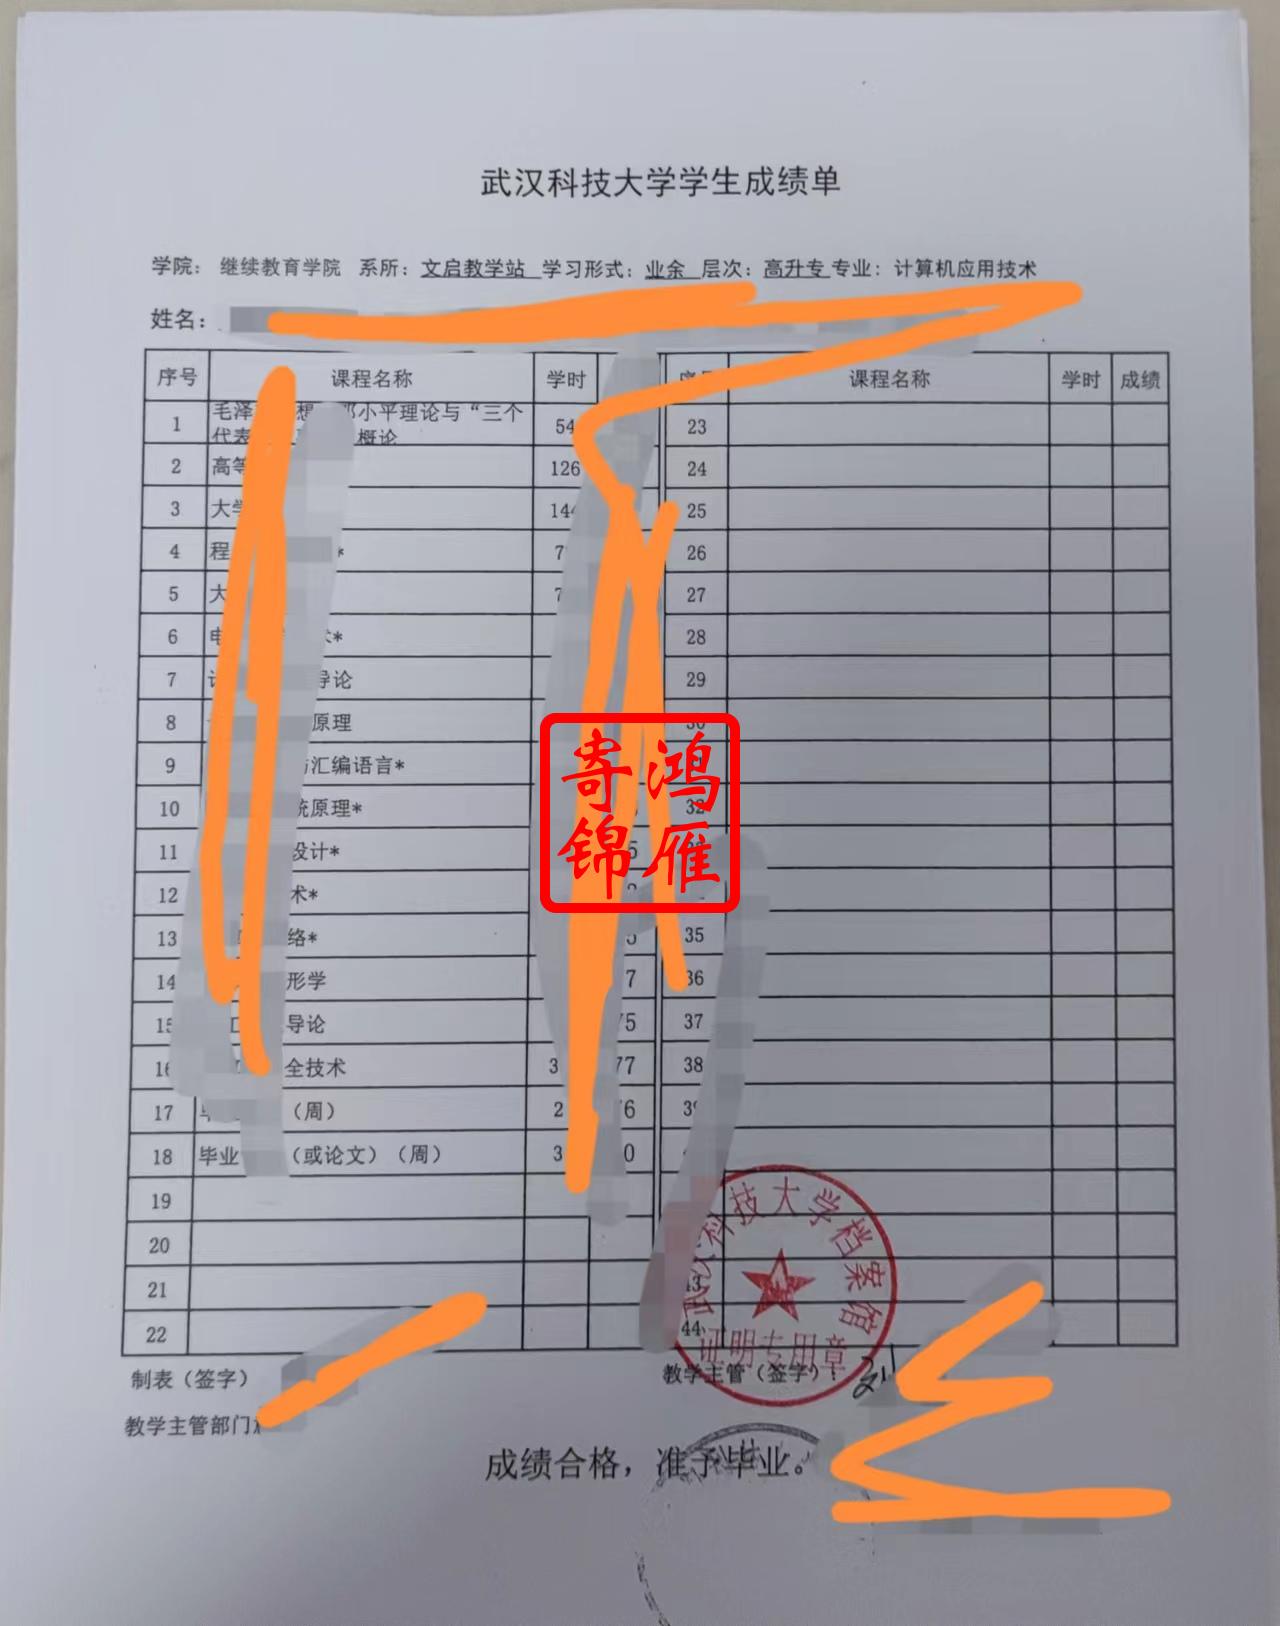 武汉科技大学继续教育学院中文成绩单打印案例.jpg